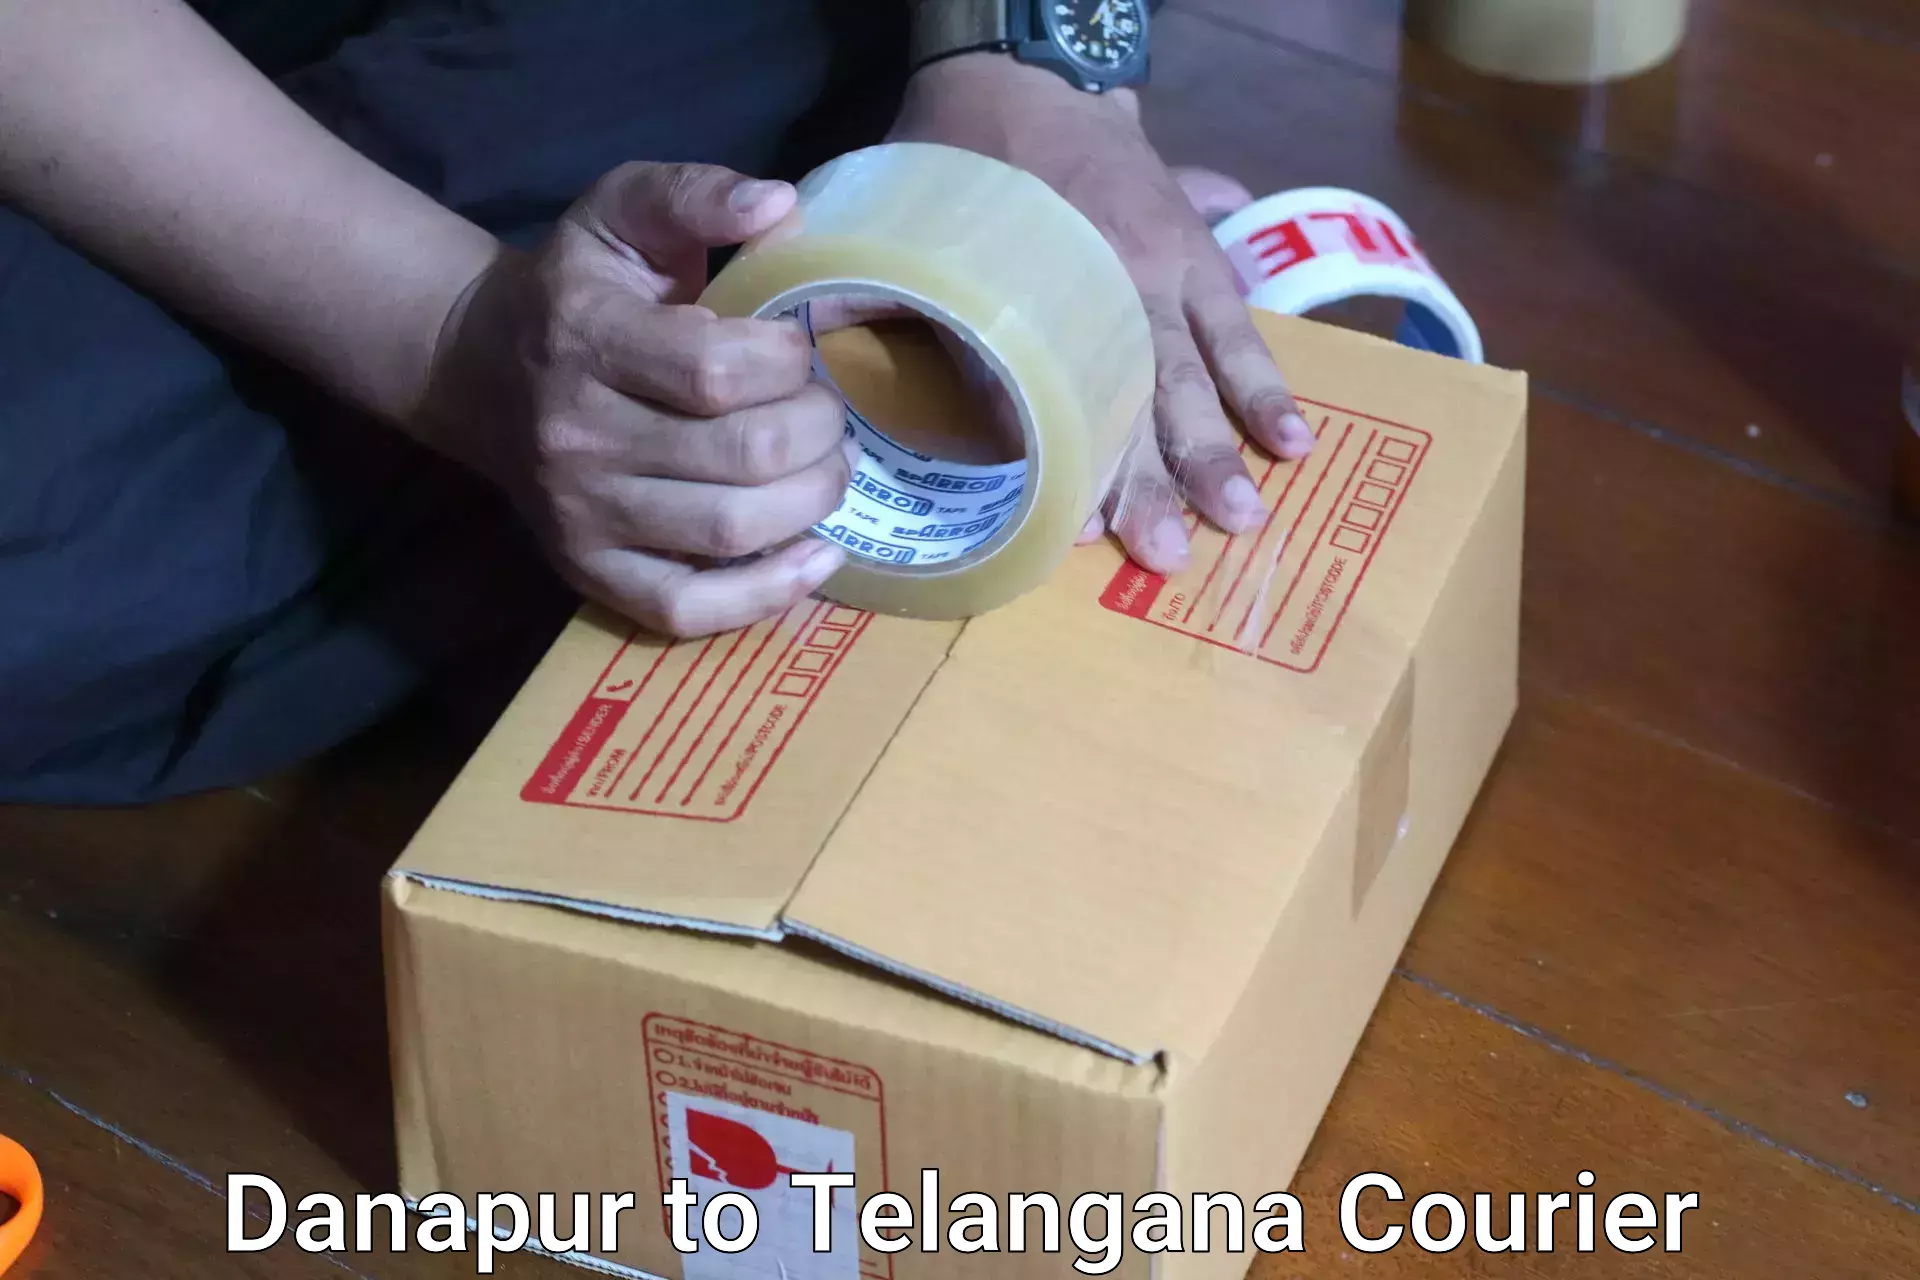 Luggage shipping specialists Danapur to Yerrupalem